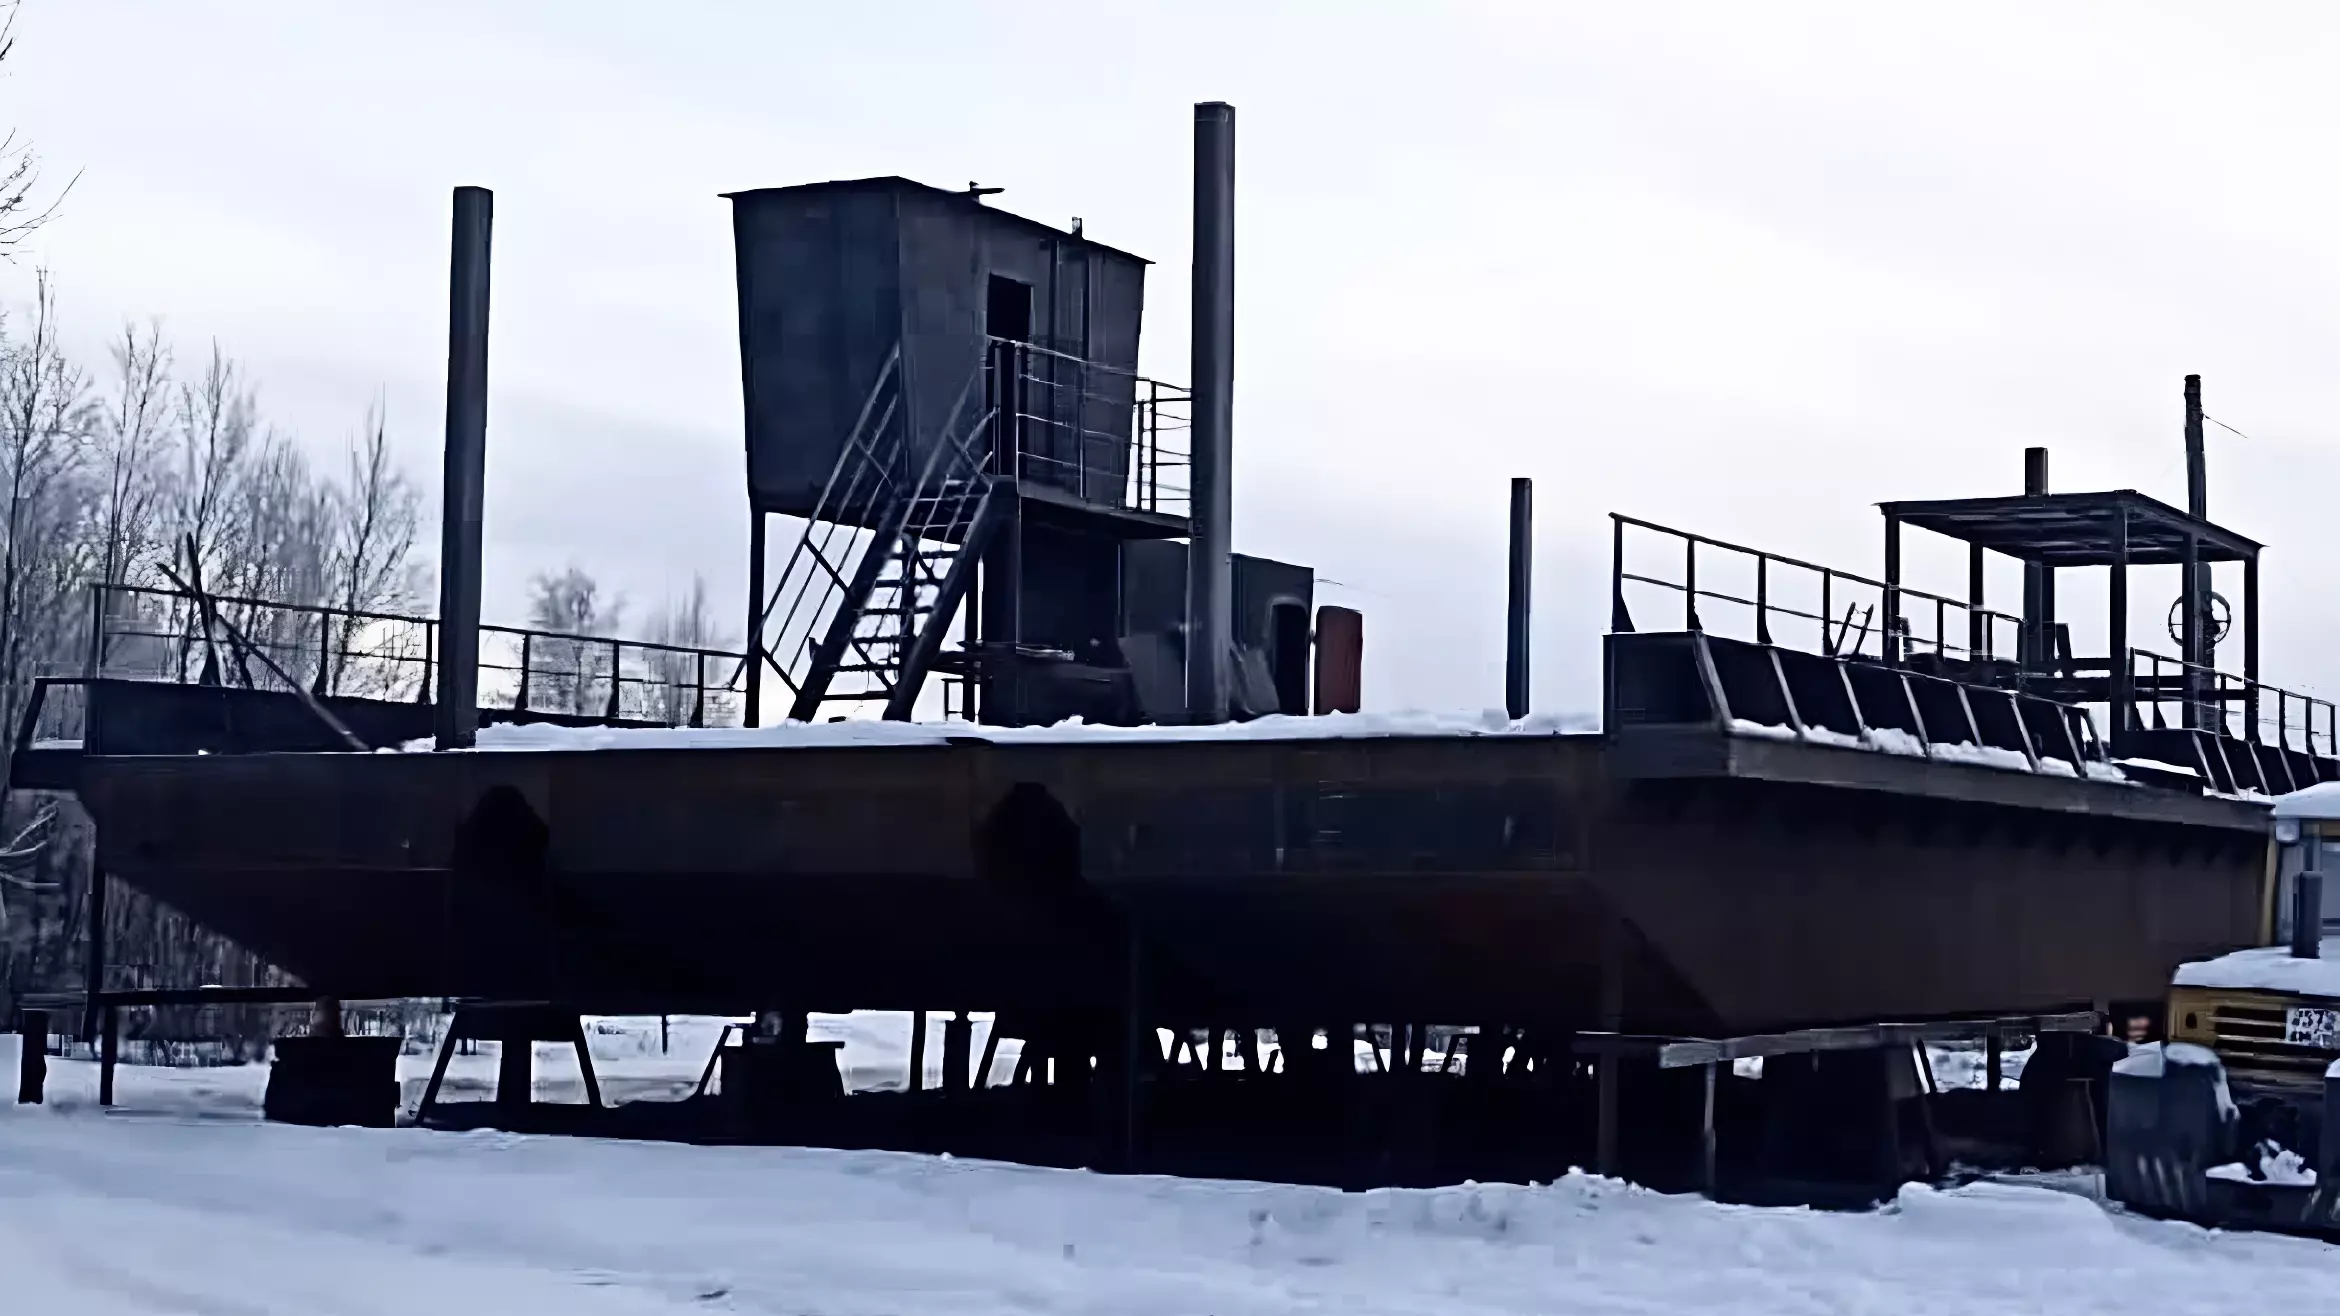 Поселок Панозеро в Карелии получит современный наплавной мост